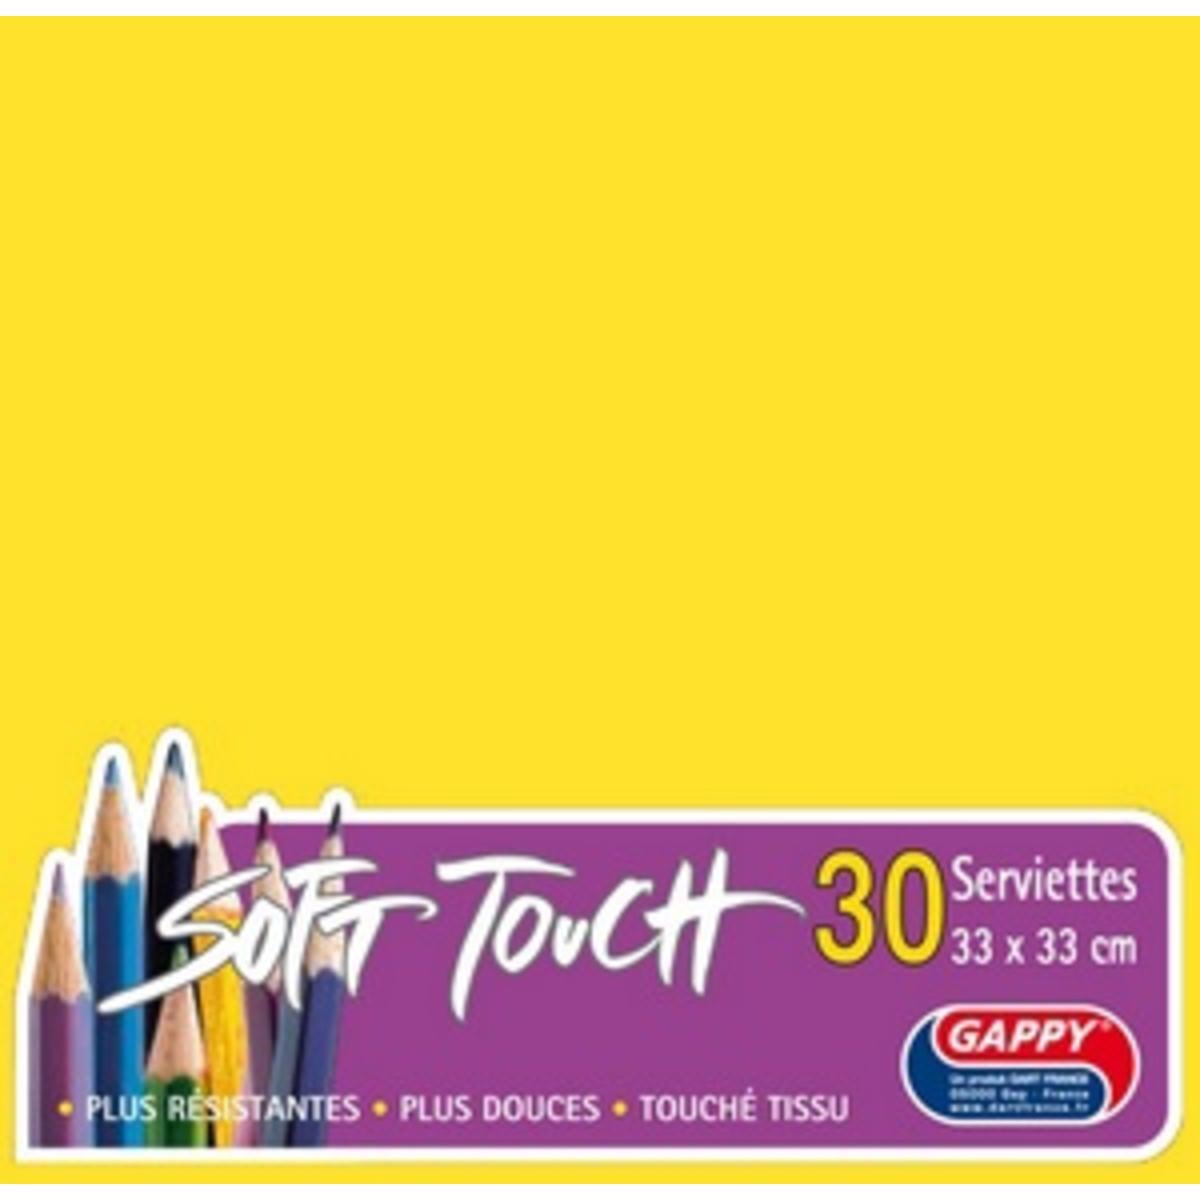 Serviettes soft touch 33 x 33 cm 2 plis x 30 pièces jauneGappy